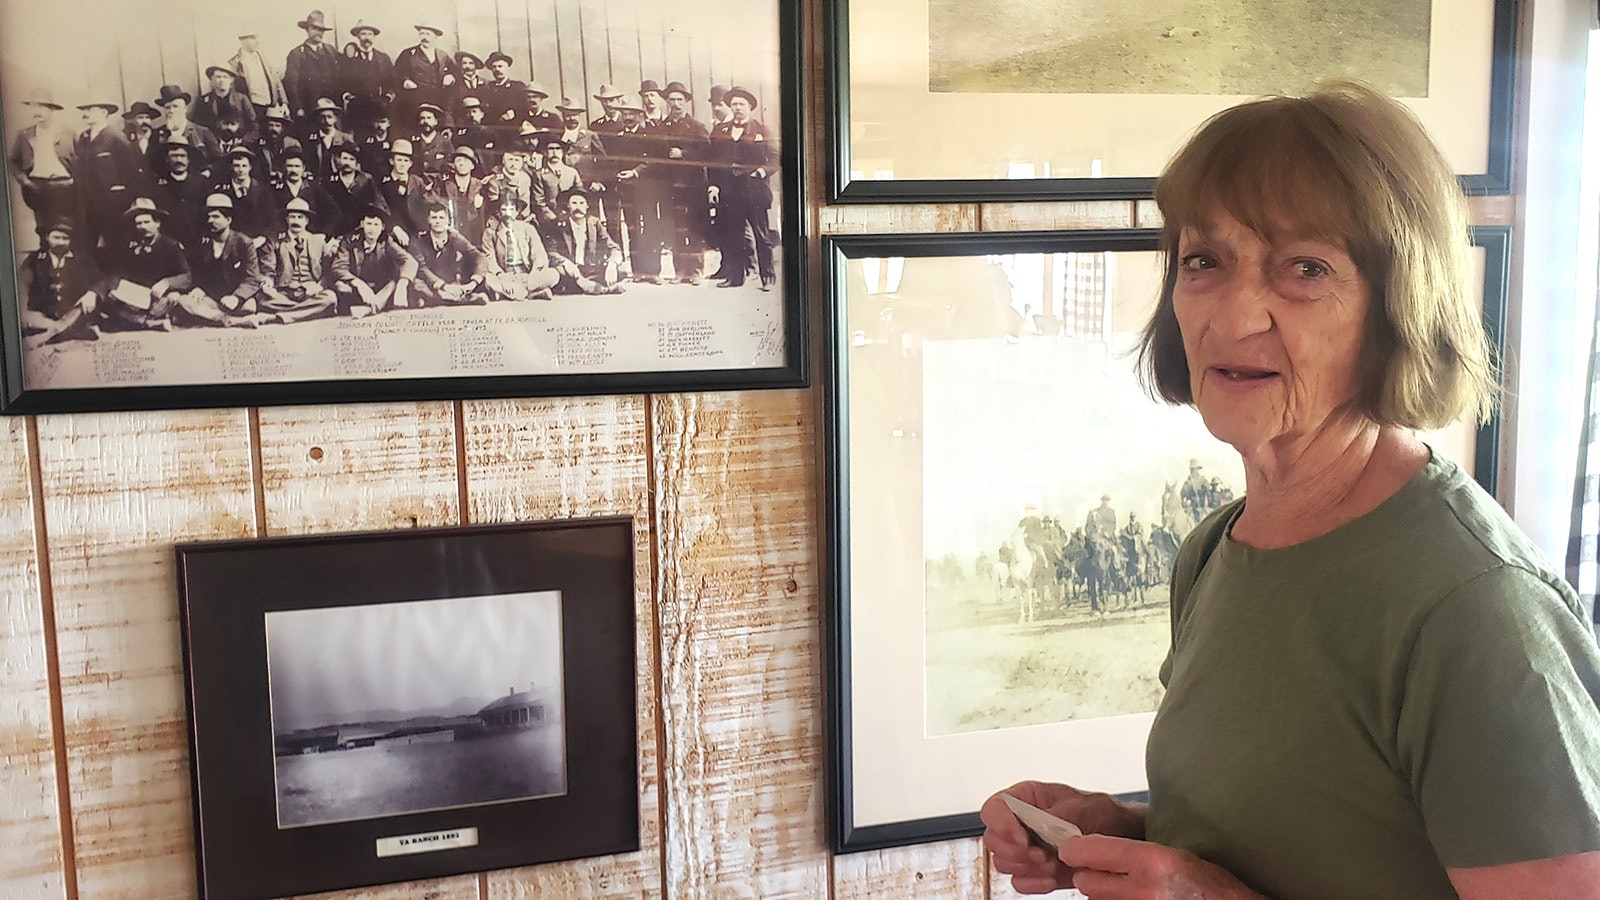 Barbara Madsen starts her history tour at the TA Ranch at the photo wall.